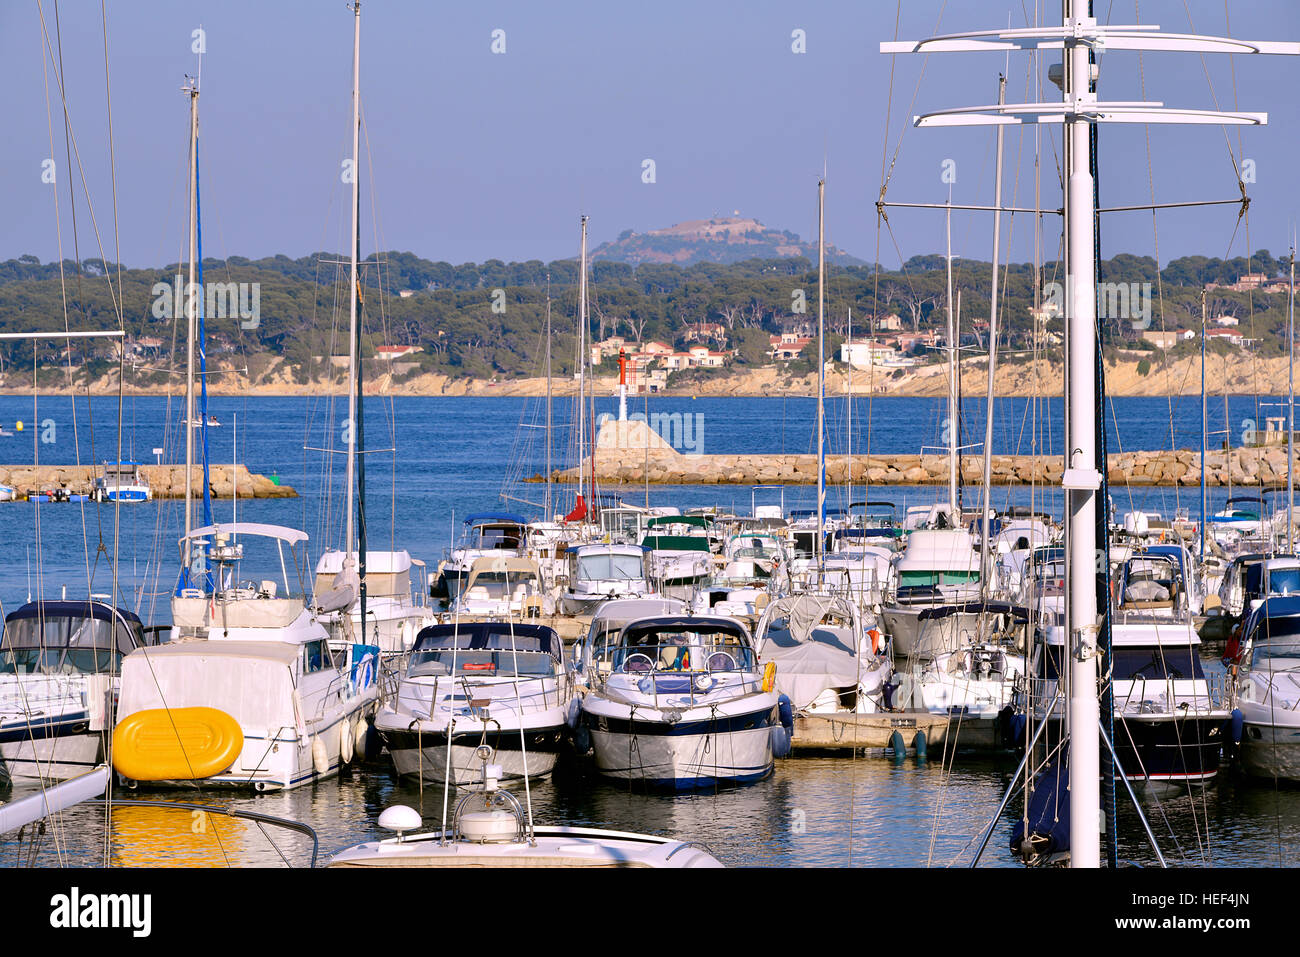 Porto di Bandol, comune nel dipartimento del Var nella regione Provenza-Alpi-Costa azzurra nel sud della Francia. Foto Stock